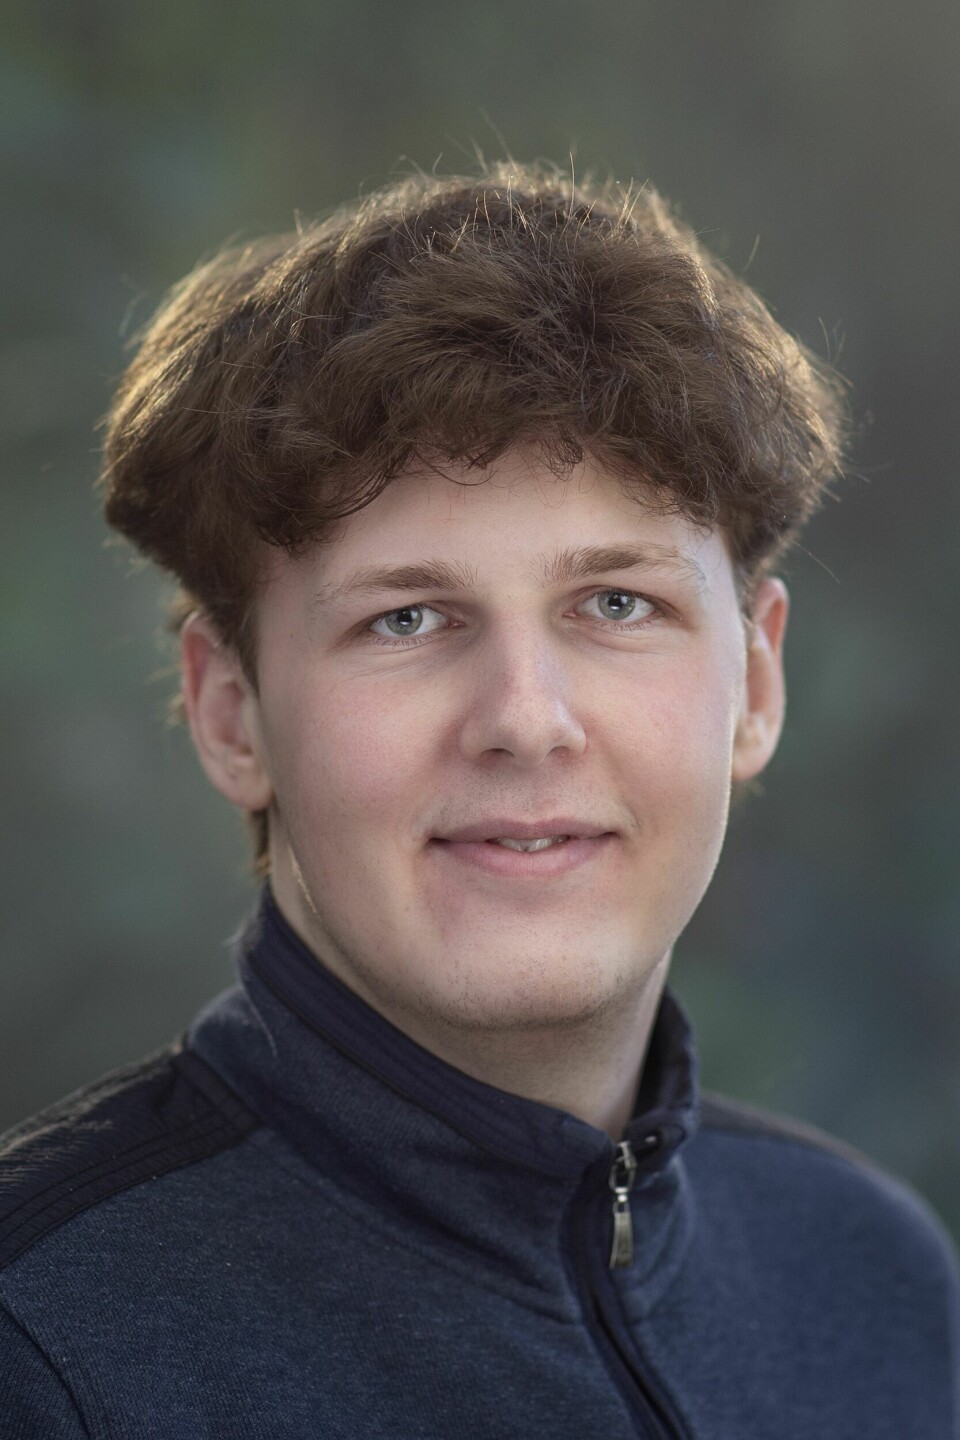 21-årige Anton fra Brønderslev bor i dag i København, hvor han flyttede hen efter 3.g for at læse teologi. Han er politisk interesseret og ser sine kollegie-roomies som en form for familie